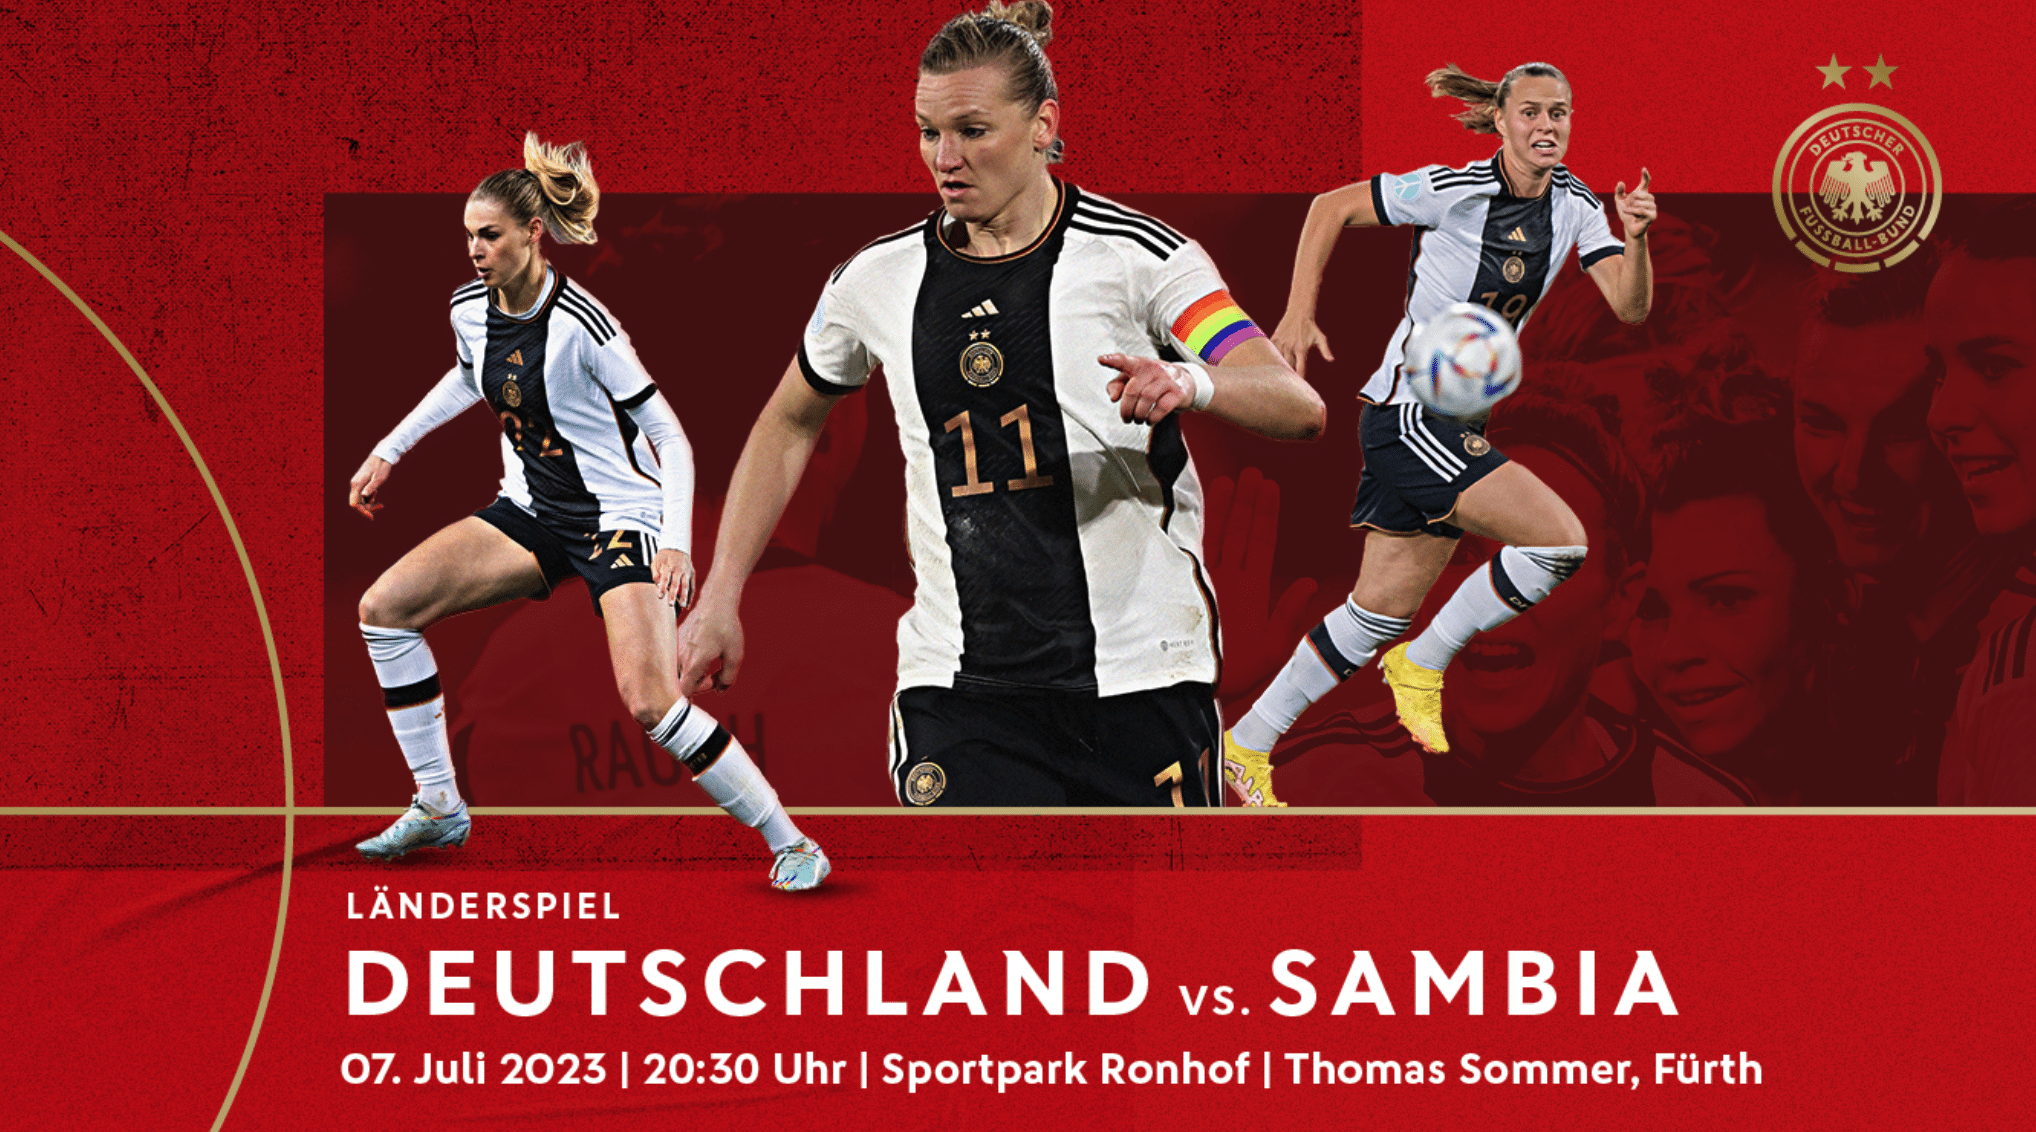 Frauenfußball heute Ergebnis *23* Länderspiel Deutschland gegen Sambia * Frauen WM 2023 * Deutsche Nationalmannschaft der Frauen